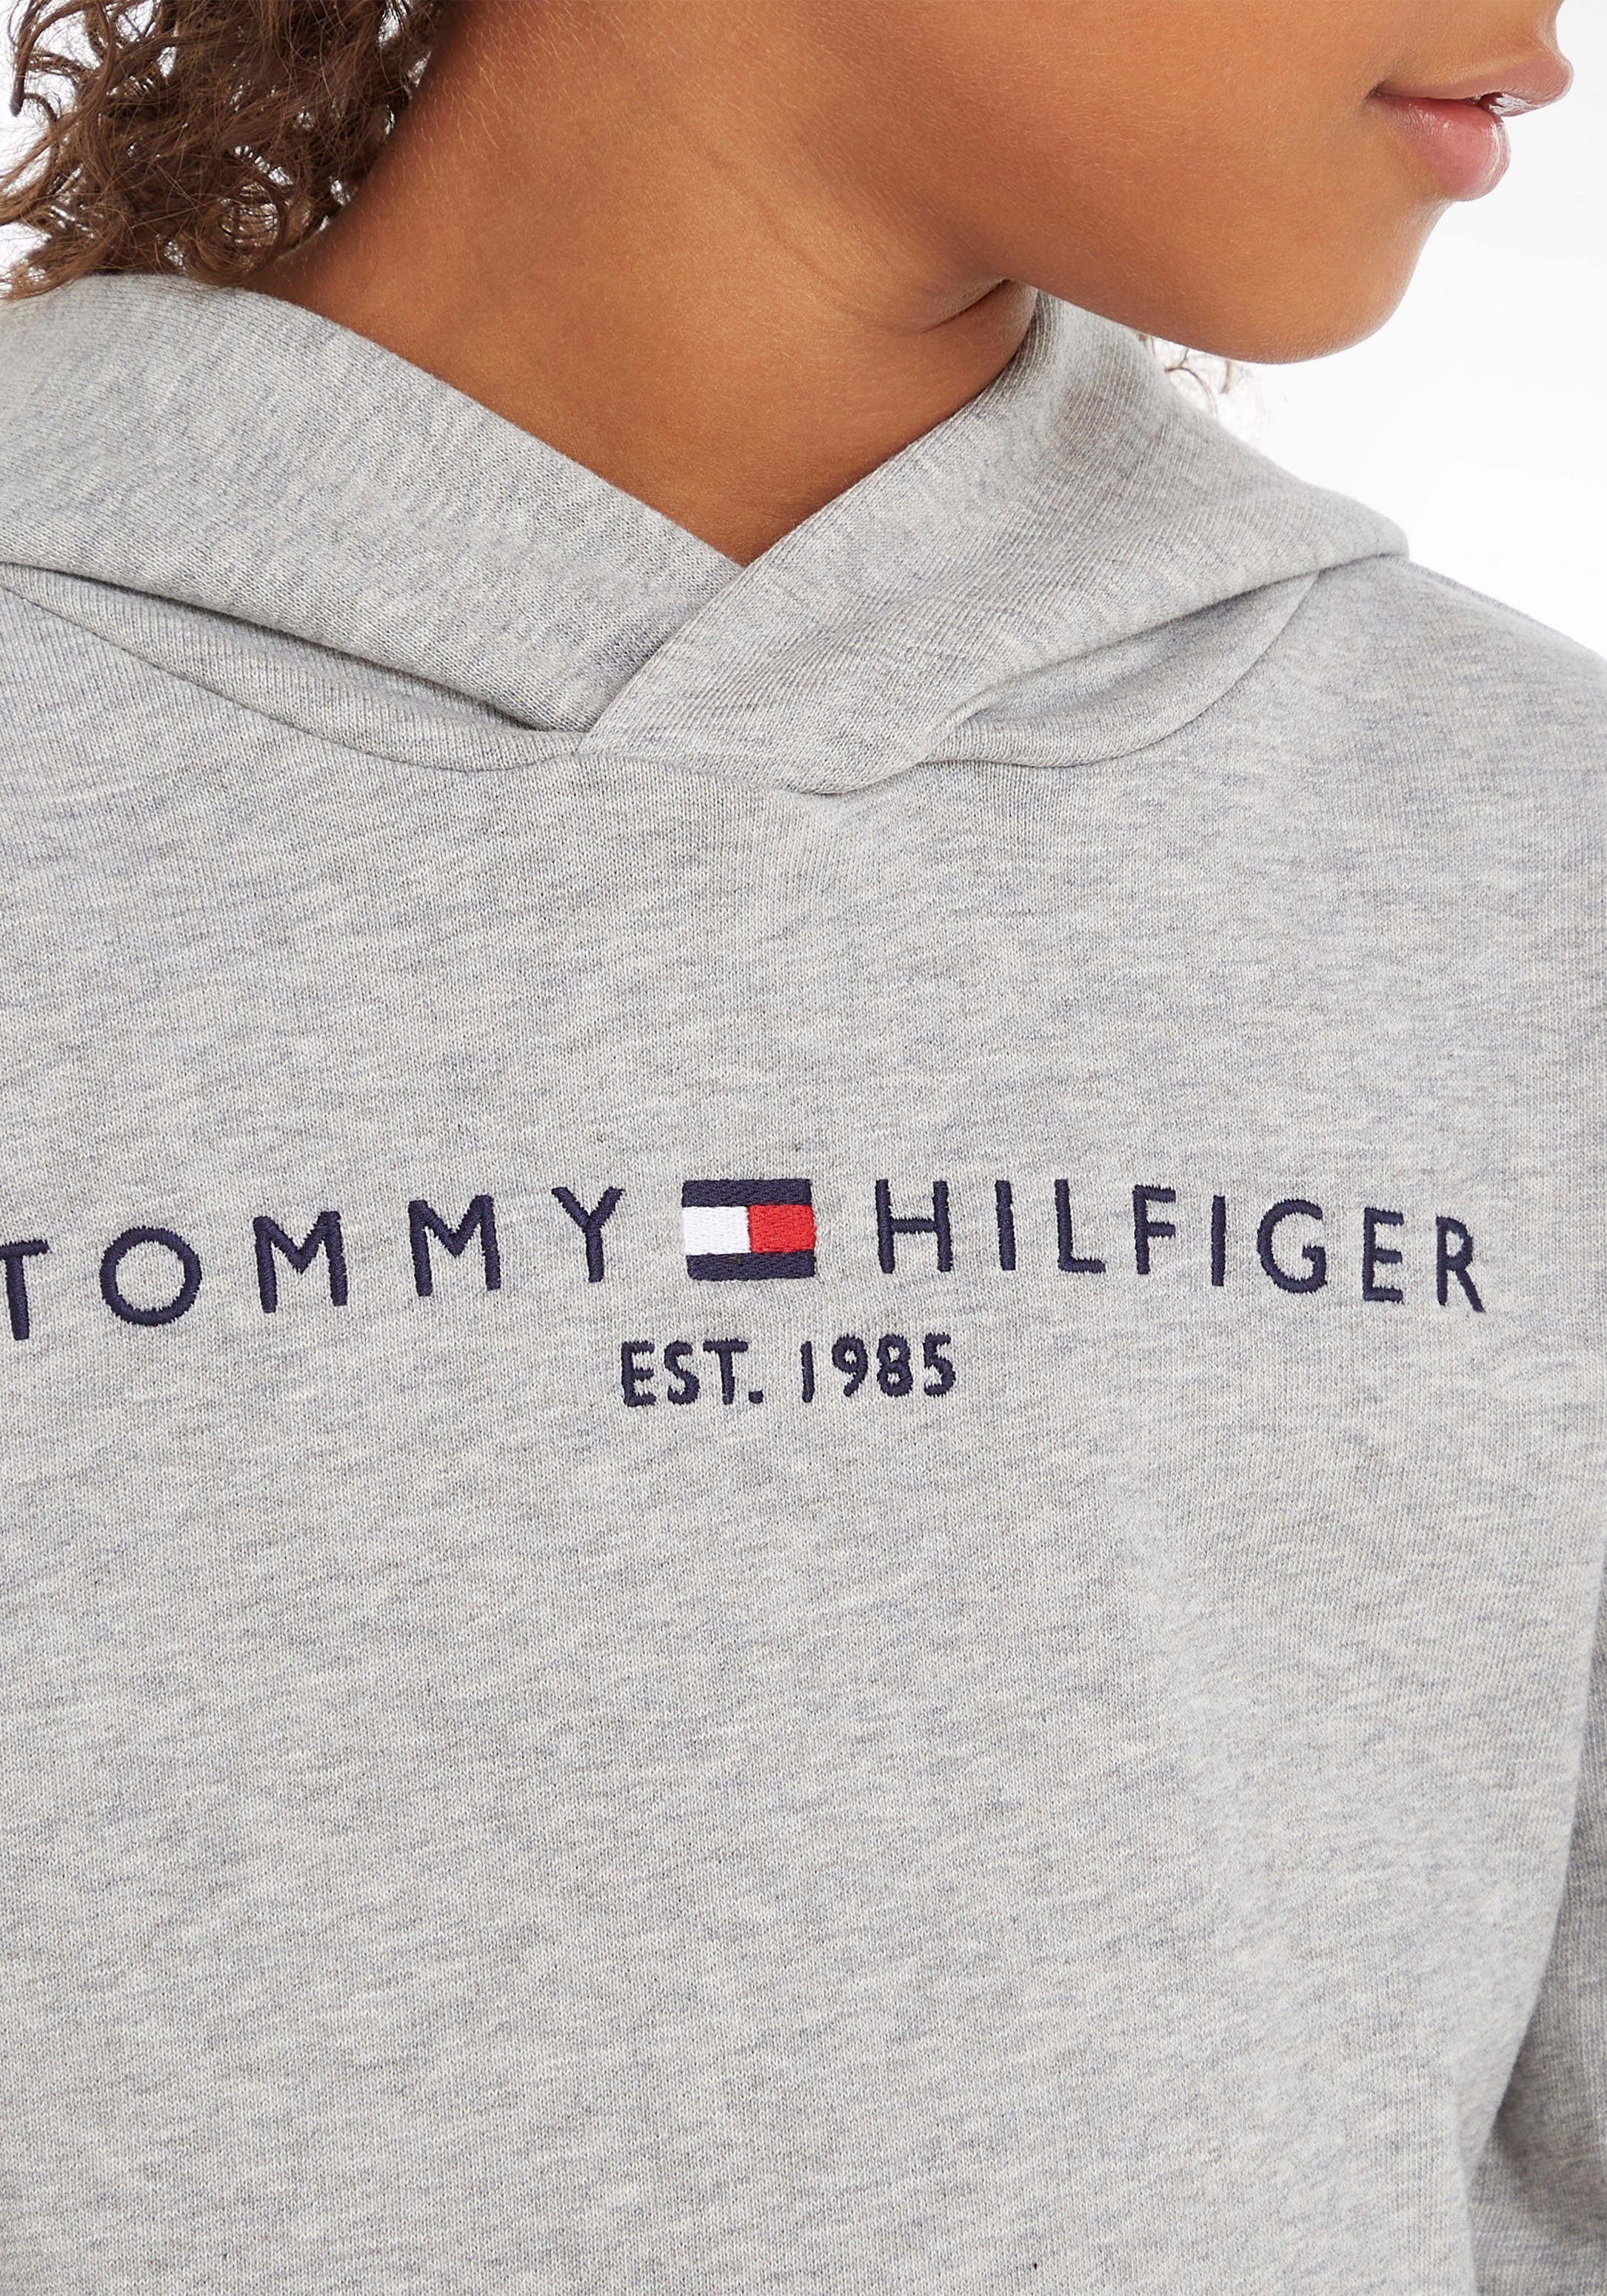 HOODIE für Tommy Kapuzensweatshirt ESSENTIAL Hilfiger Jungen und Mädchen